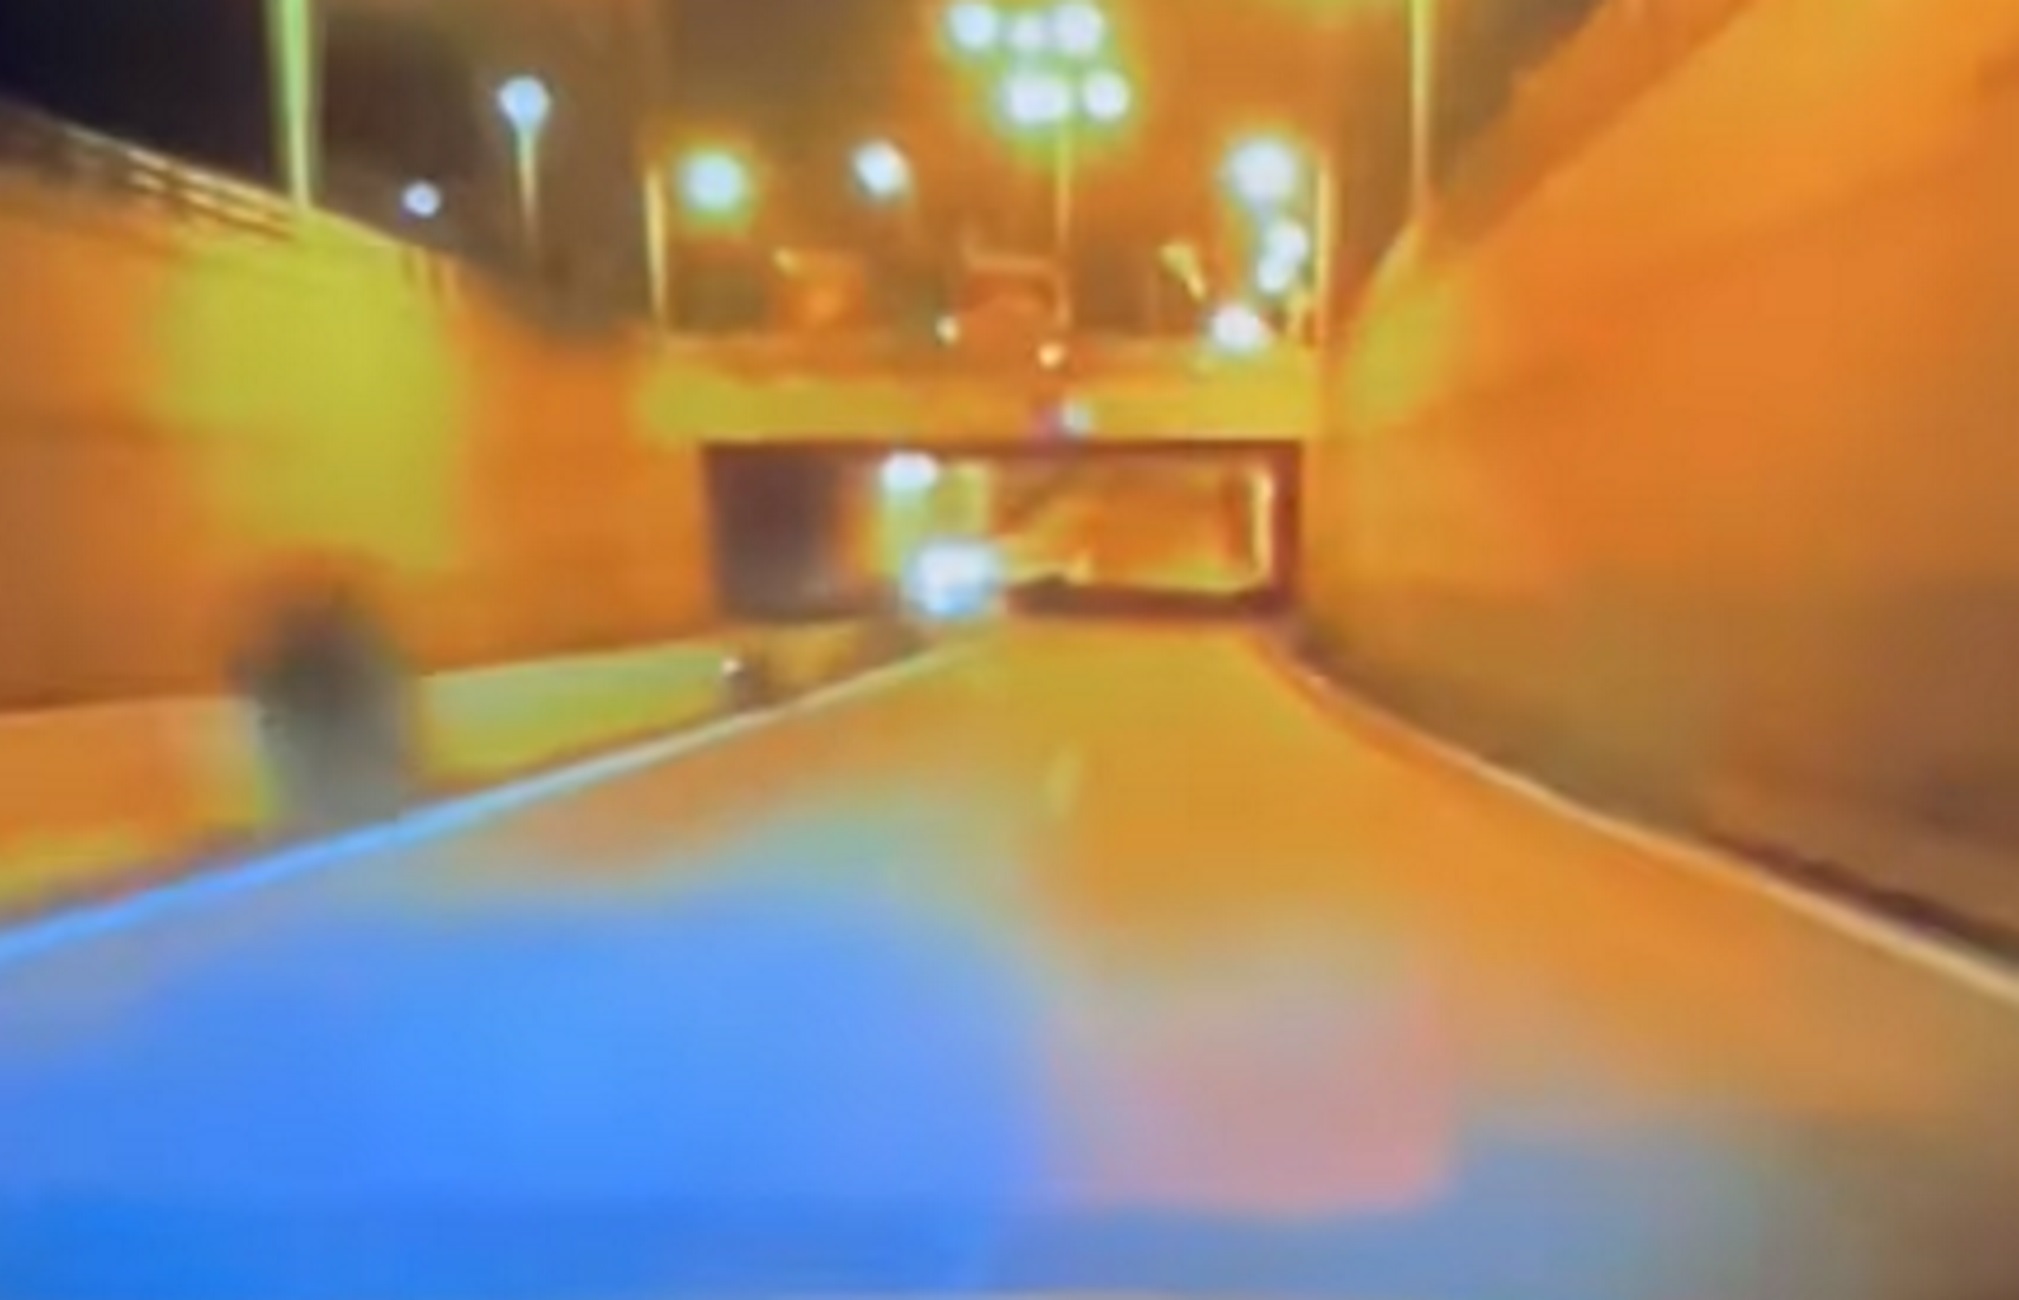 Ρέθυμνο: Βίντεο με αυτοκίνητο να πηγαίνει ανάποδα στο αντίθετο ρεύμα με ιλιγγιώδη ταχύτητα